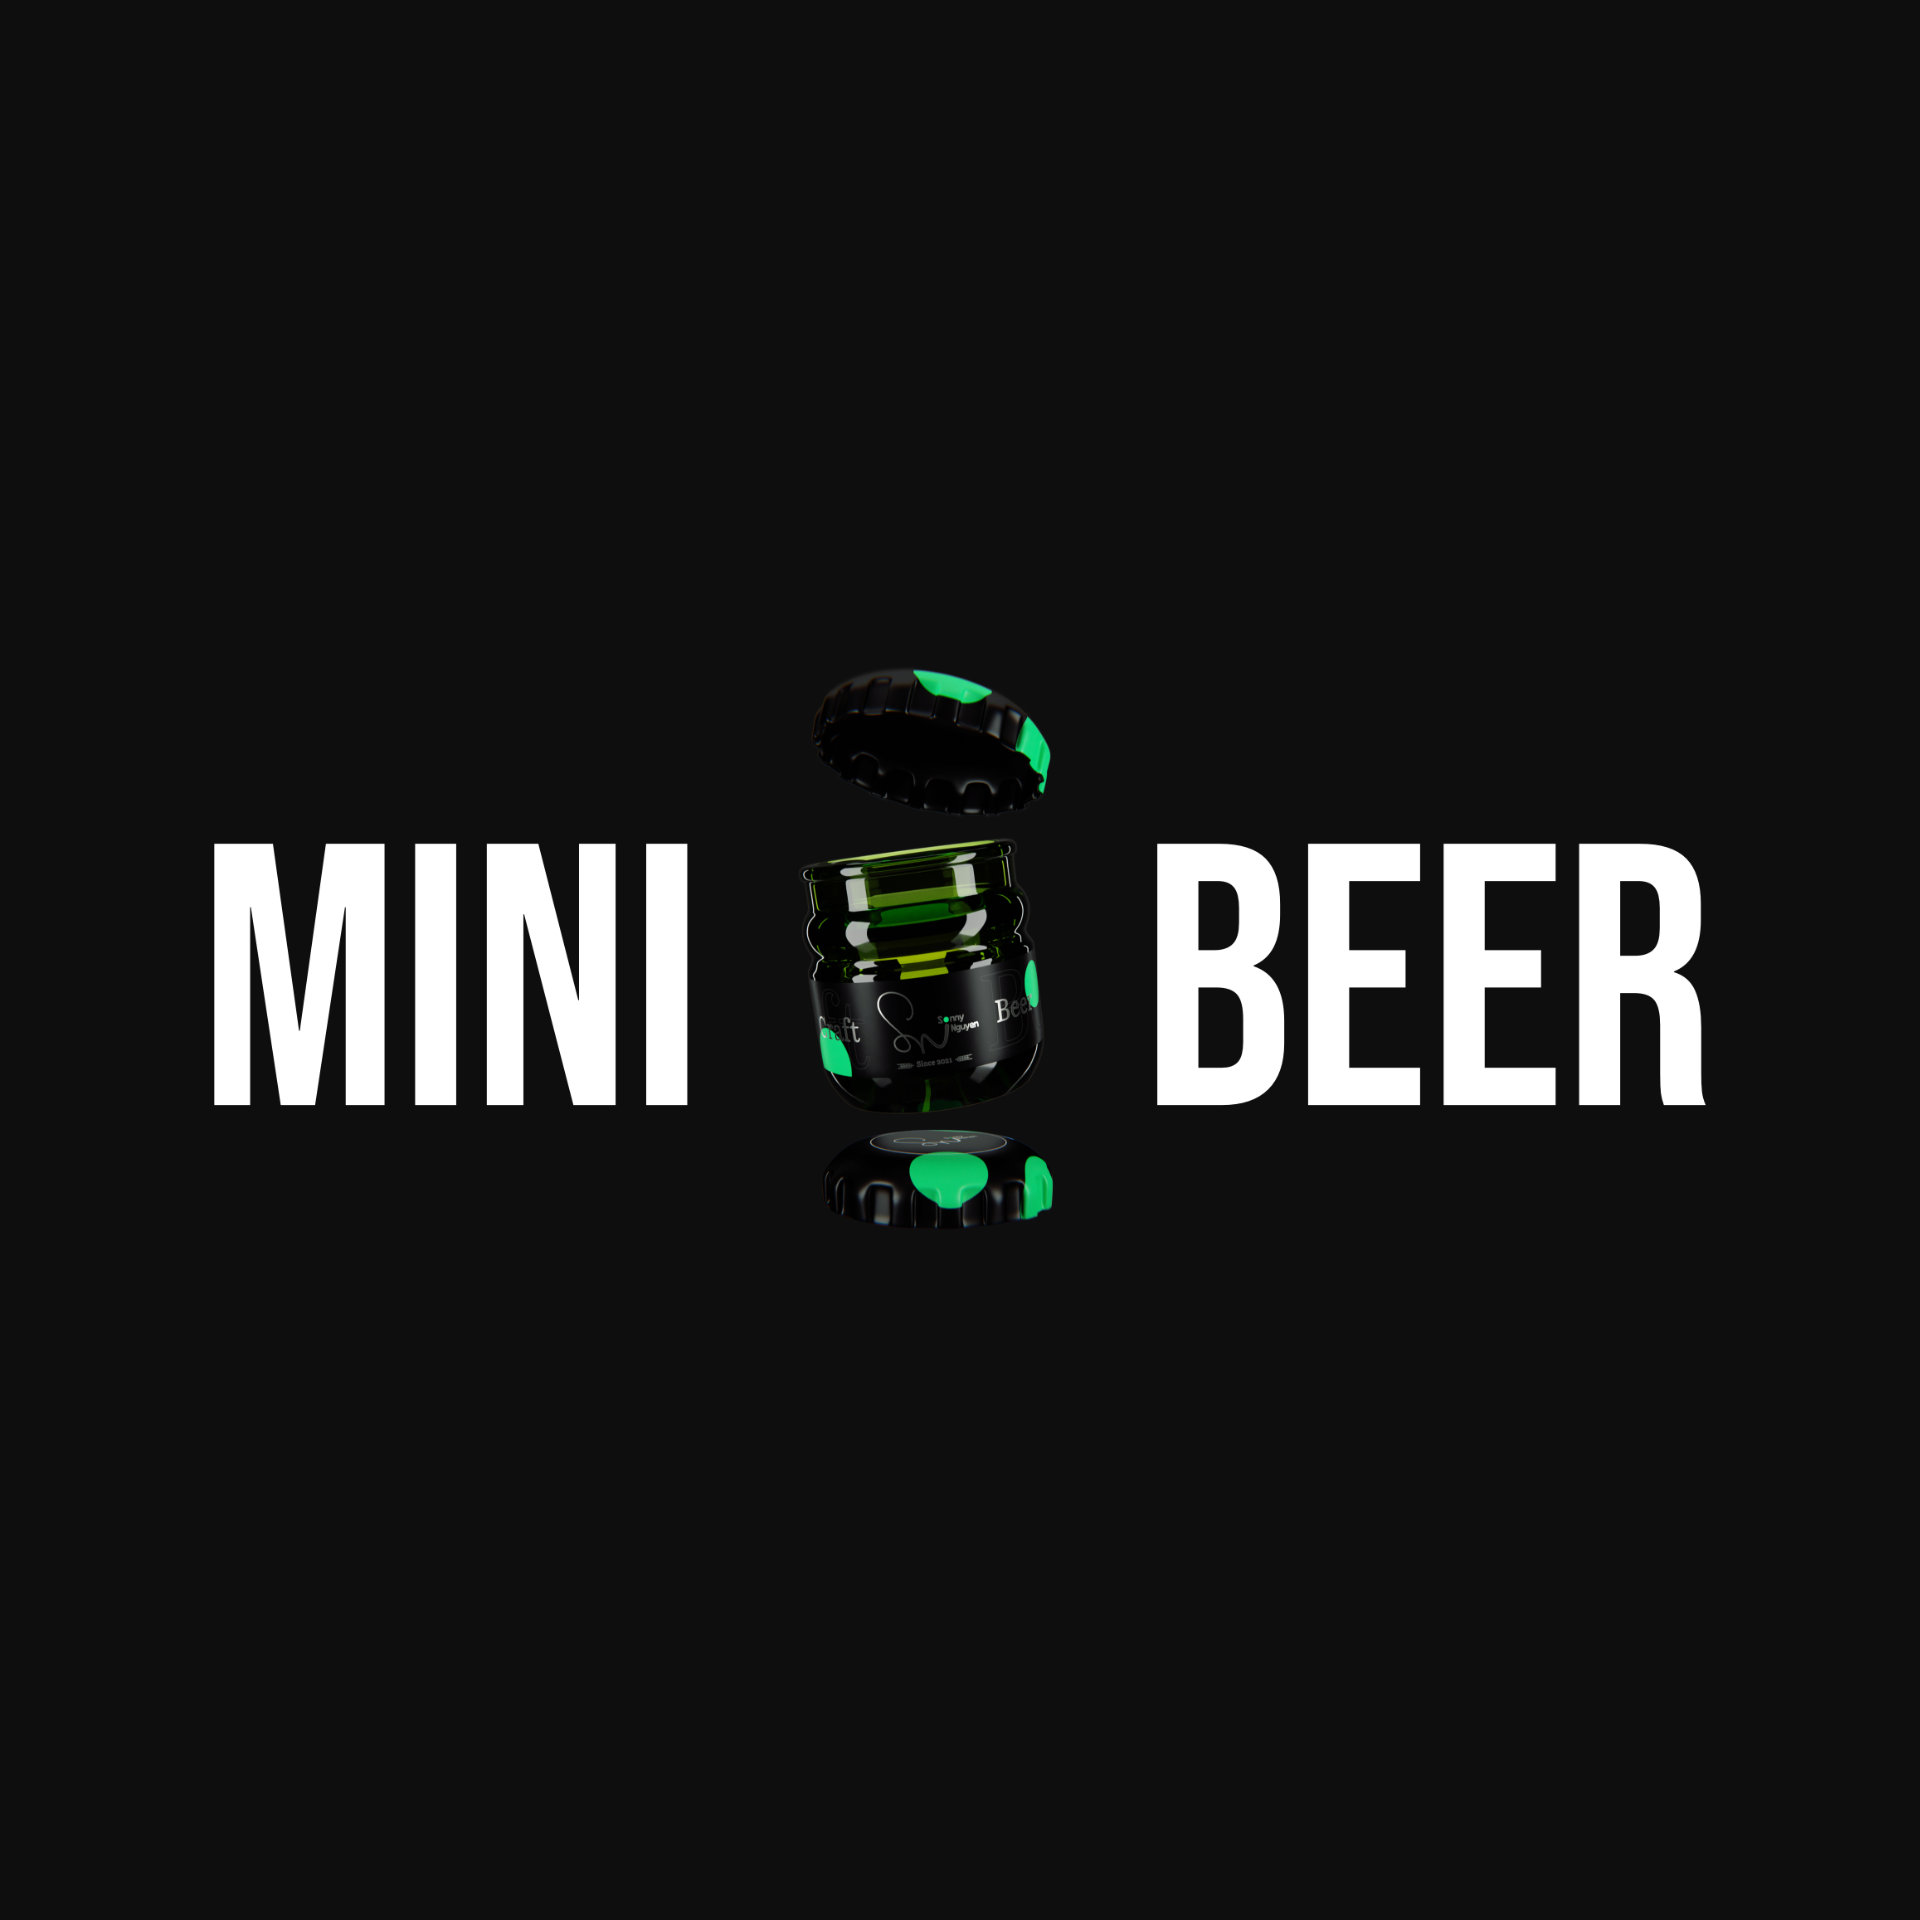 Super Mini Beer - by Sonny Nguyen